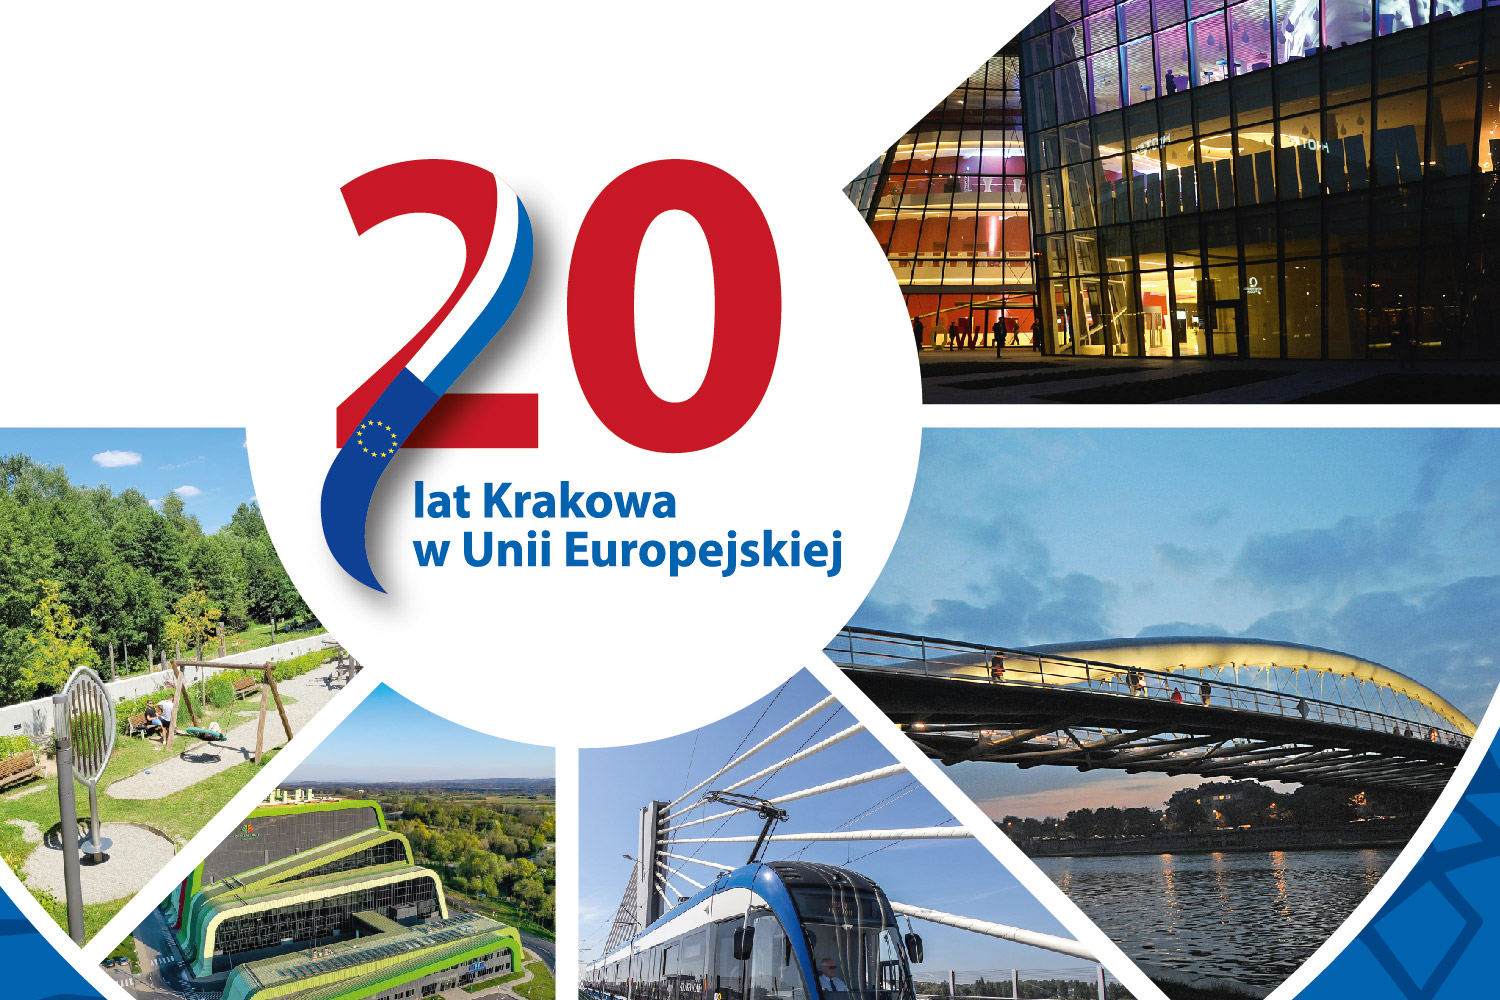 20 lat Krakowa w Unii Europejskiej